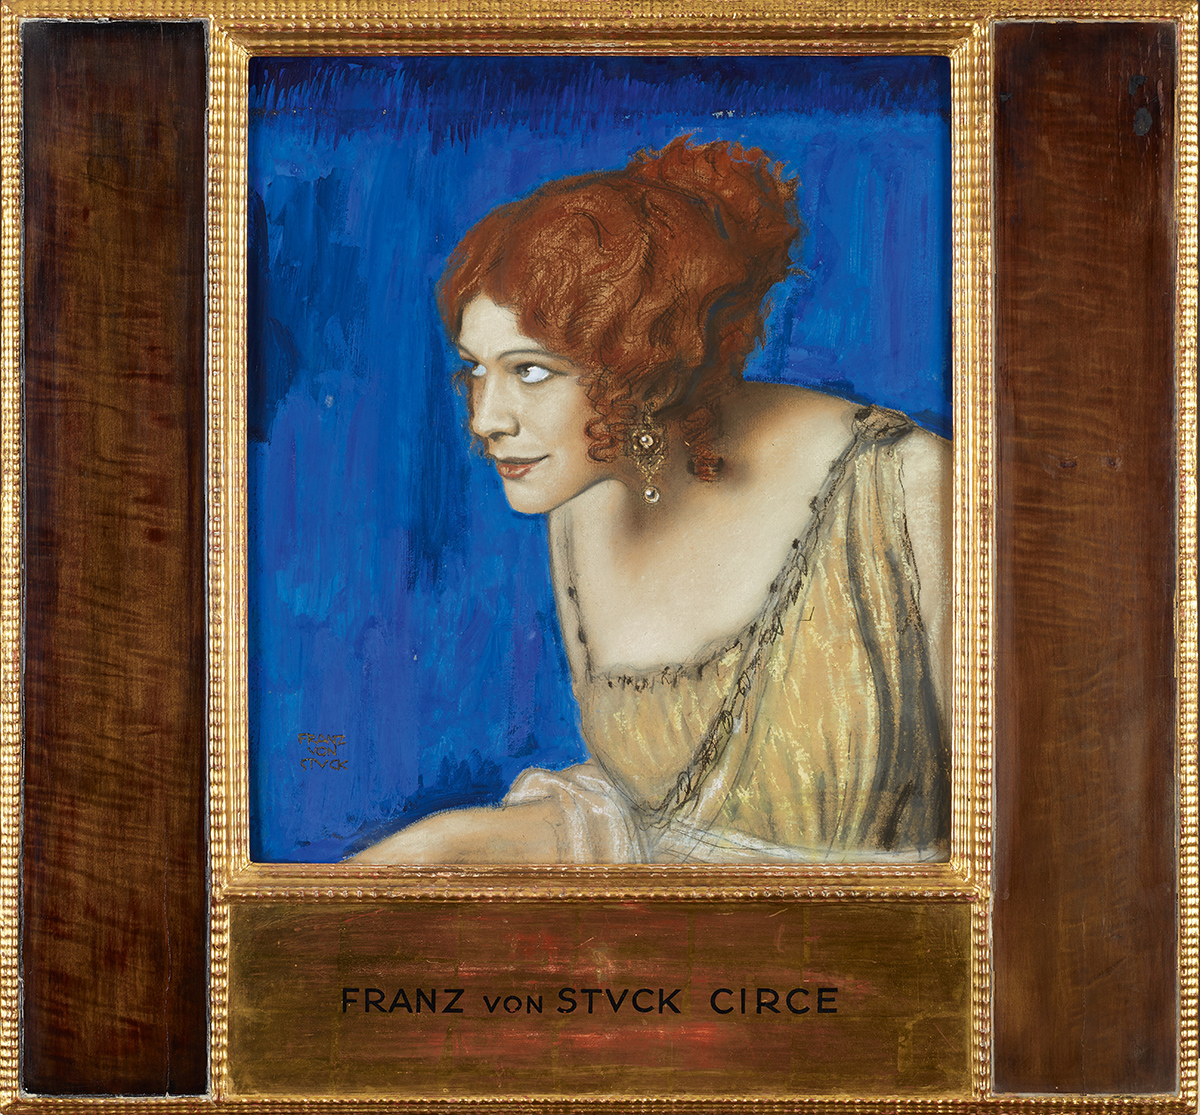 Franz von Stuck :: Tilla Durieux as Circe, cf. 1913 © Belvedere, Vienna. From : Franz von Stuck, in mostra a Vienna il peccato e la Secessione